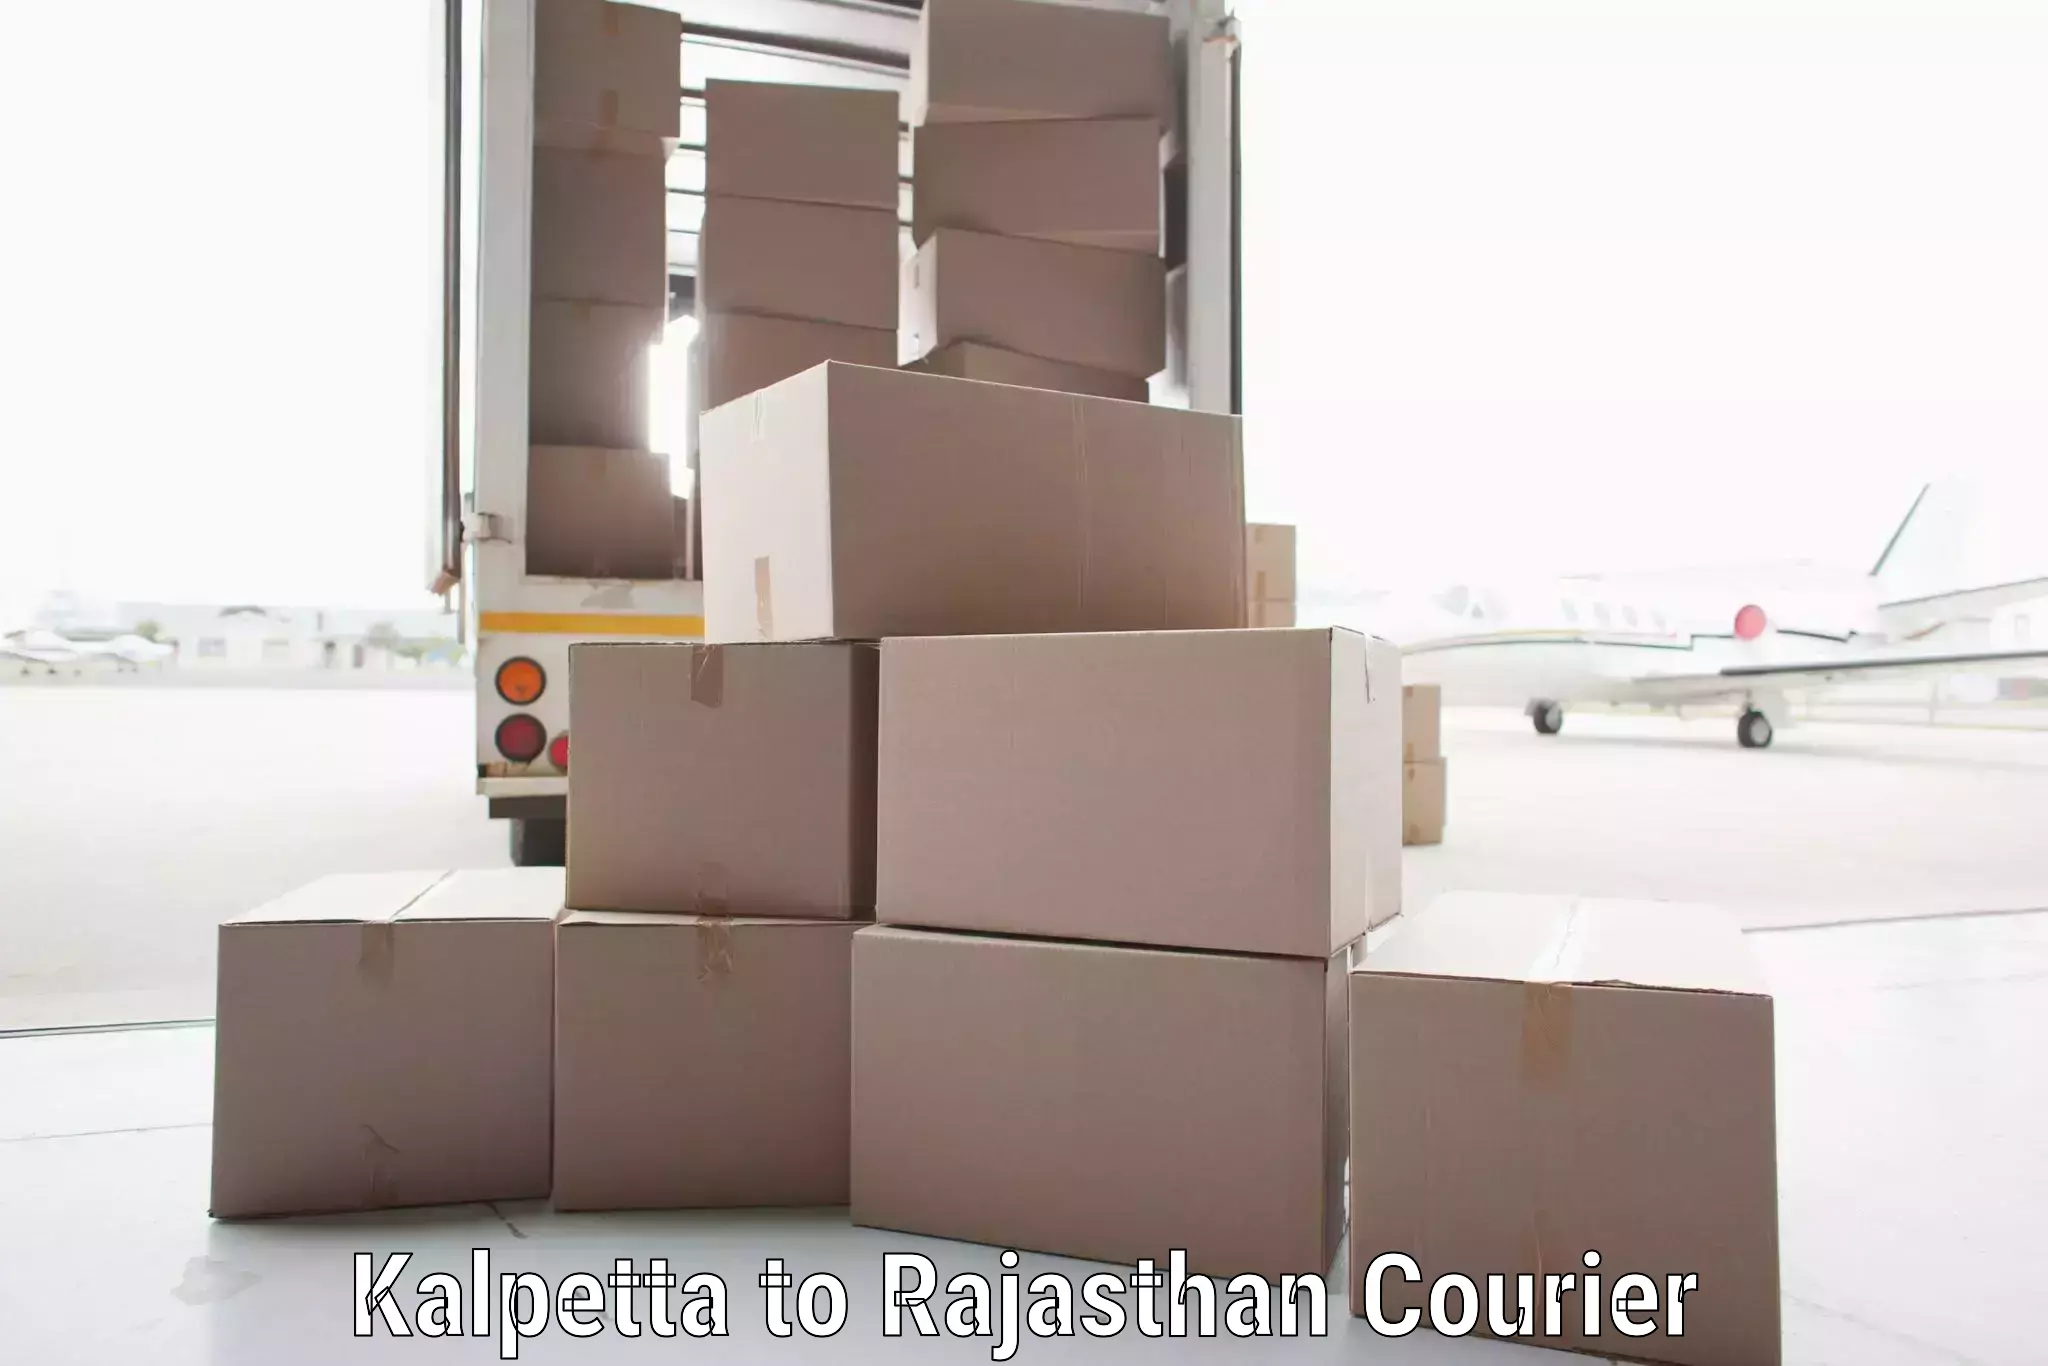 Express logistics providers Kalpetta to Rajasthan